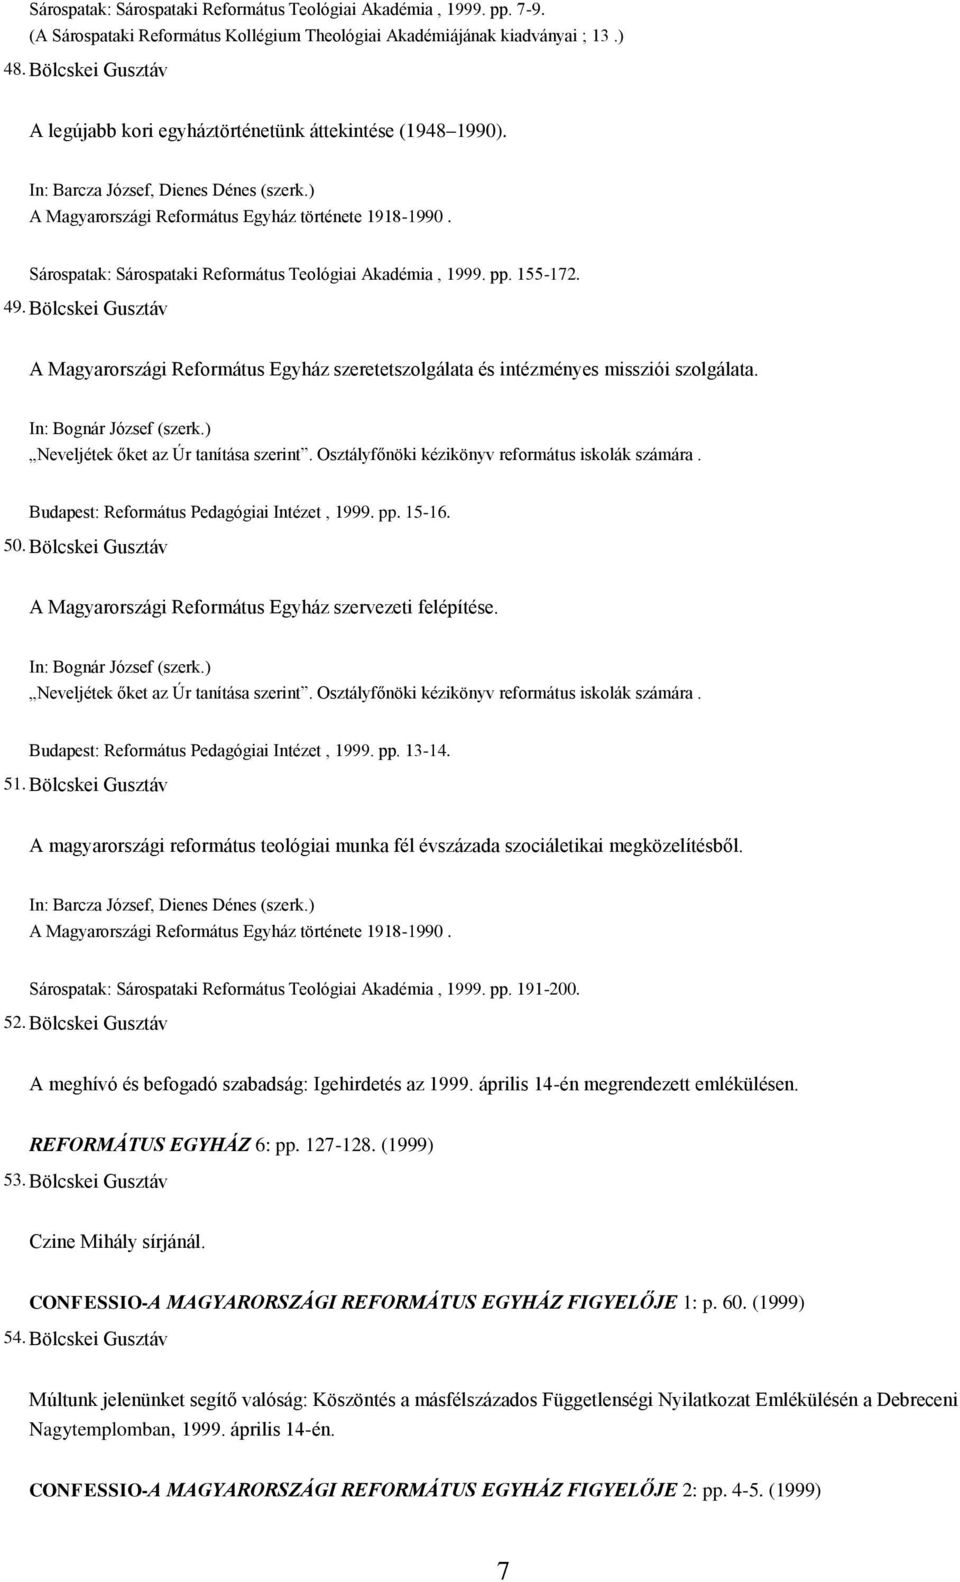 Sárospatak: Sárospataki Református Teológiai Akadémia, 1999. pp. 155-172. 49. Bölcskei Gusztáv A Magyarországi Református Egyház szeretetszolgálata és intézményes missziói szolgálata.